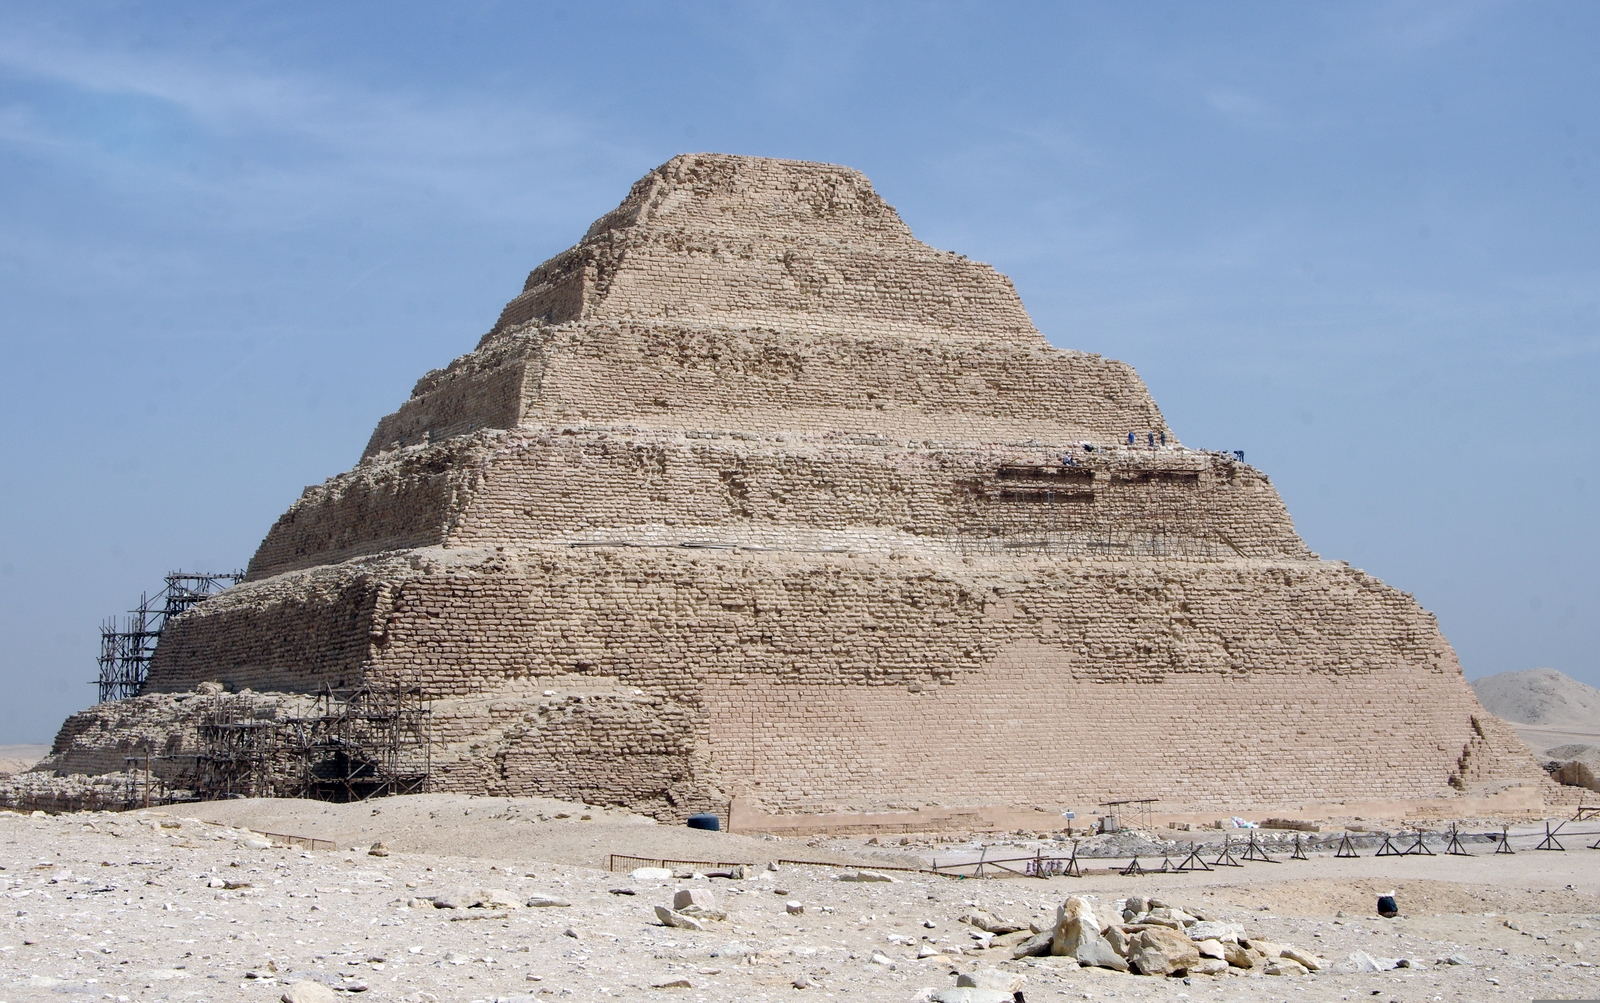 Die Stufenpyramide des altägyptischen Königs Djoser aus der 3. Dynastie des Alten Reiches um 2700 v. Chr ist die älteste, mit einer Höhe von 62,5 Metern die neunthöchste der ägyptischen Pyramiden